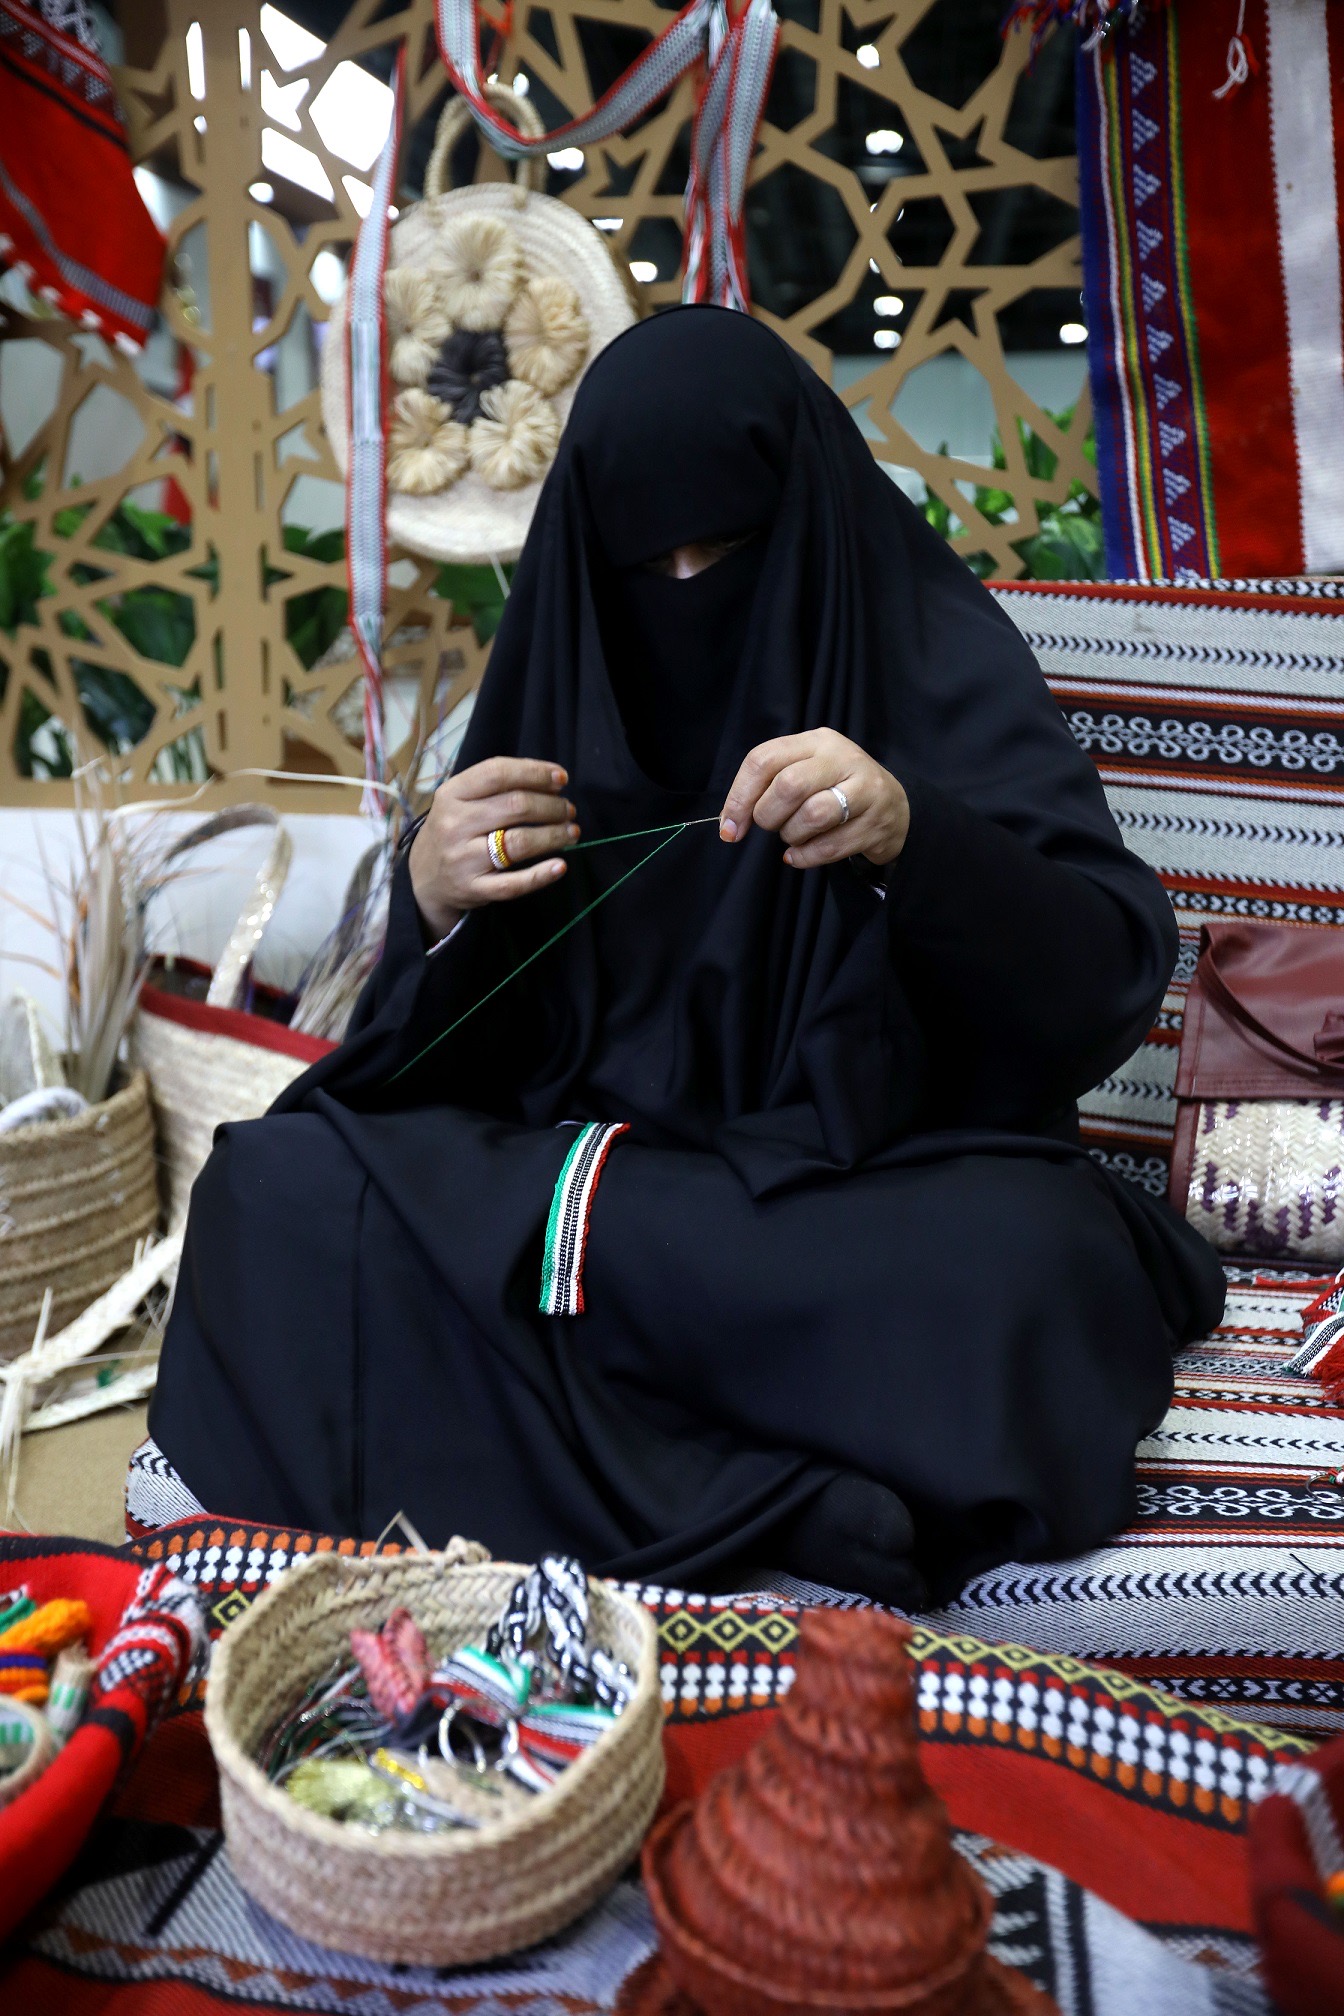 المرأة تُعزّز حضورها الفاعل في مختلف قطاعات معرض أبوظبي للصيد وبرنامج الأنشطة والفعاليات